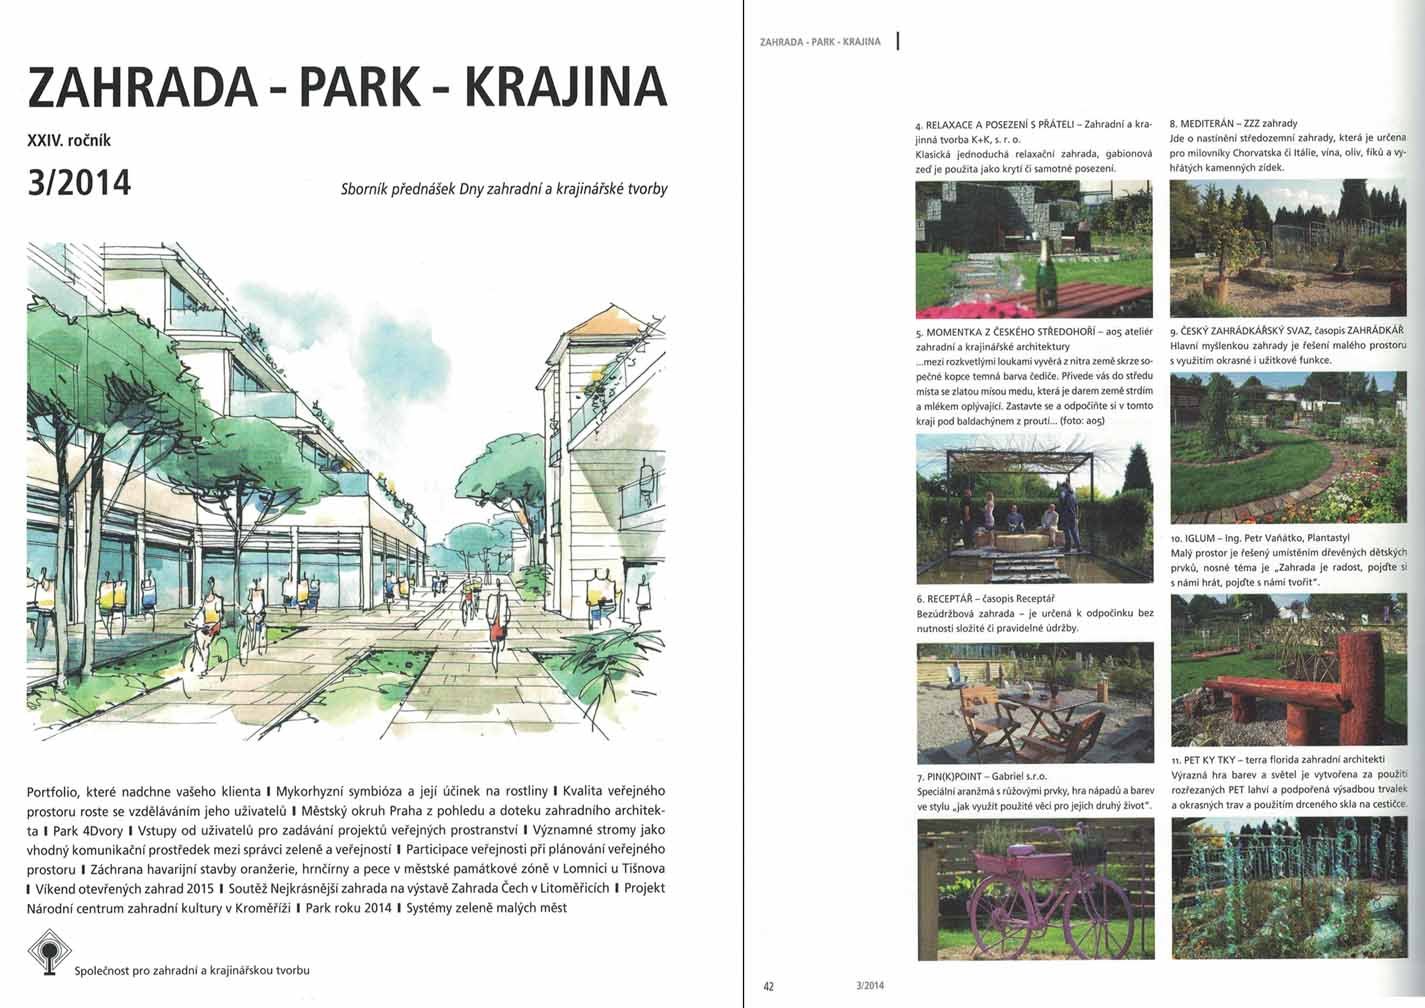 Zahrada Park Krajina 03/2014 - Soutěž Nejkrásnější zahrada na Zahradě Čech